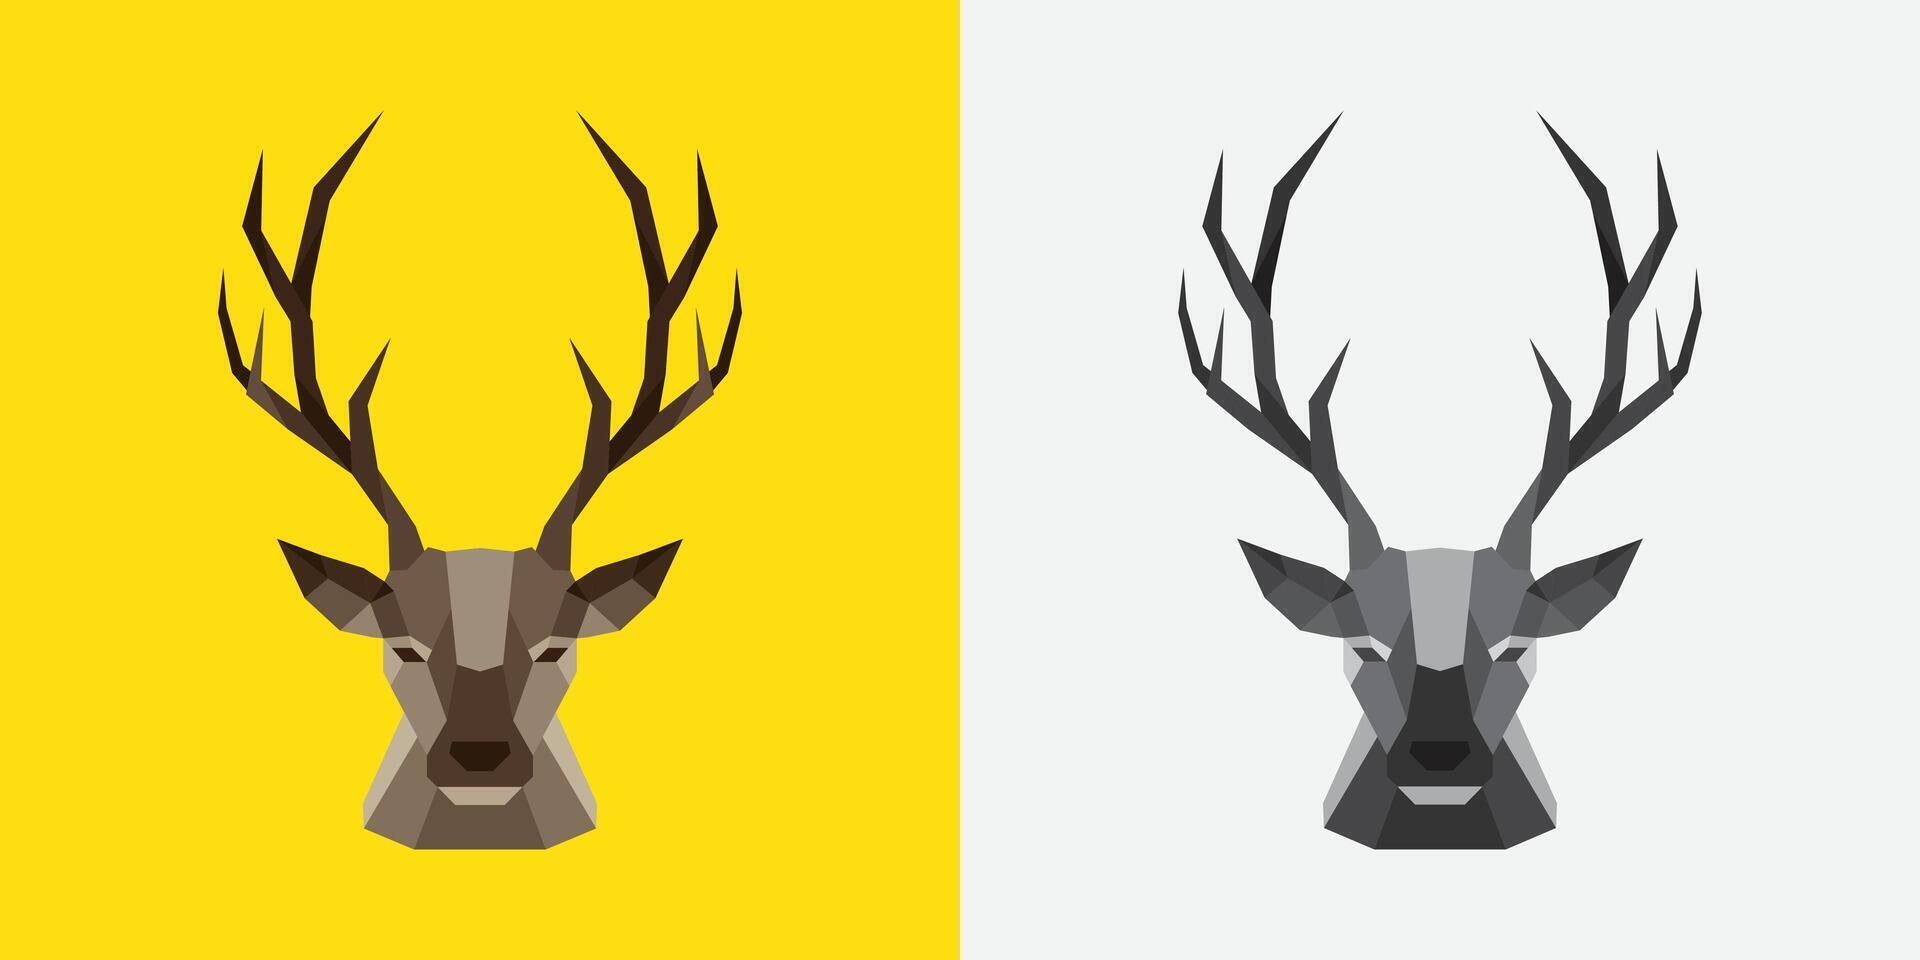 Deer head logo design vector template